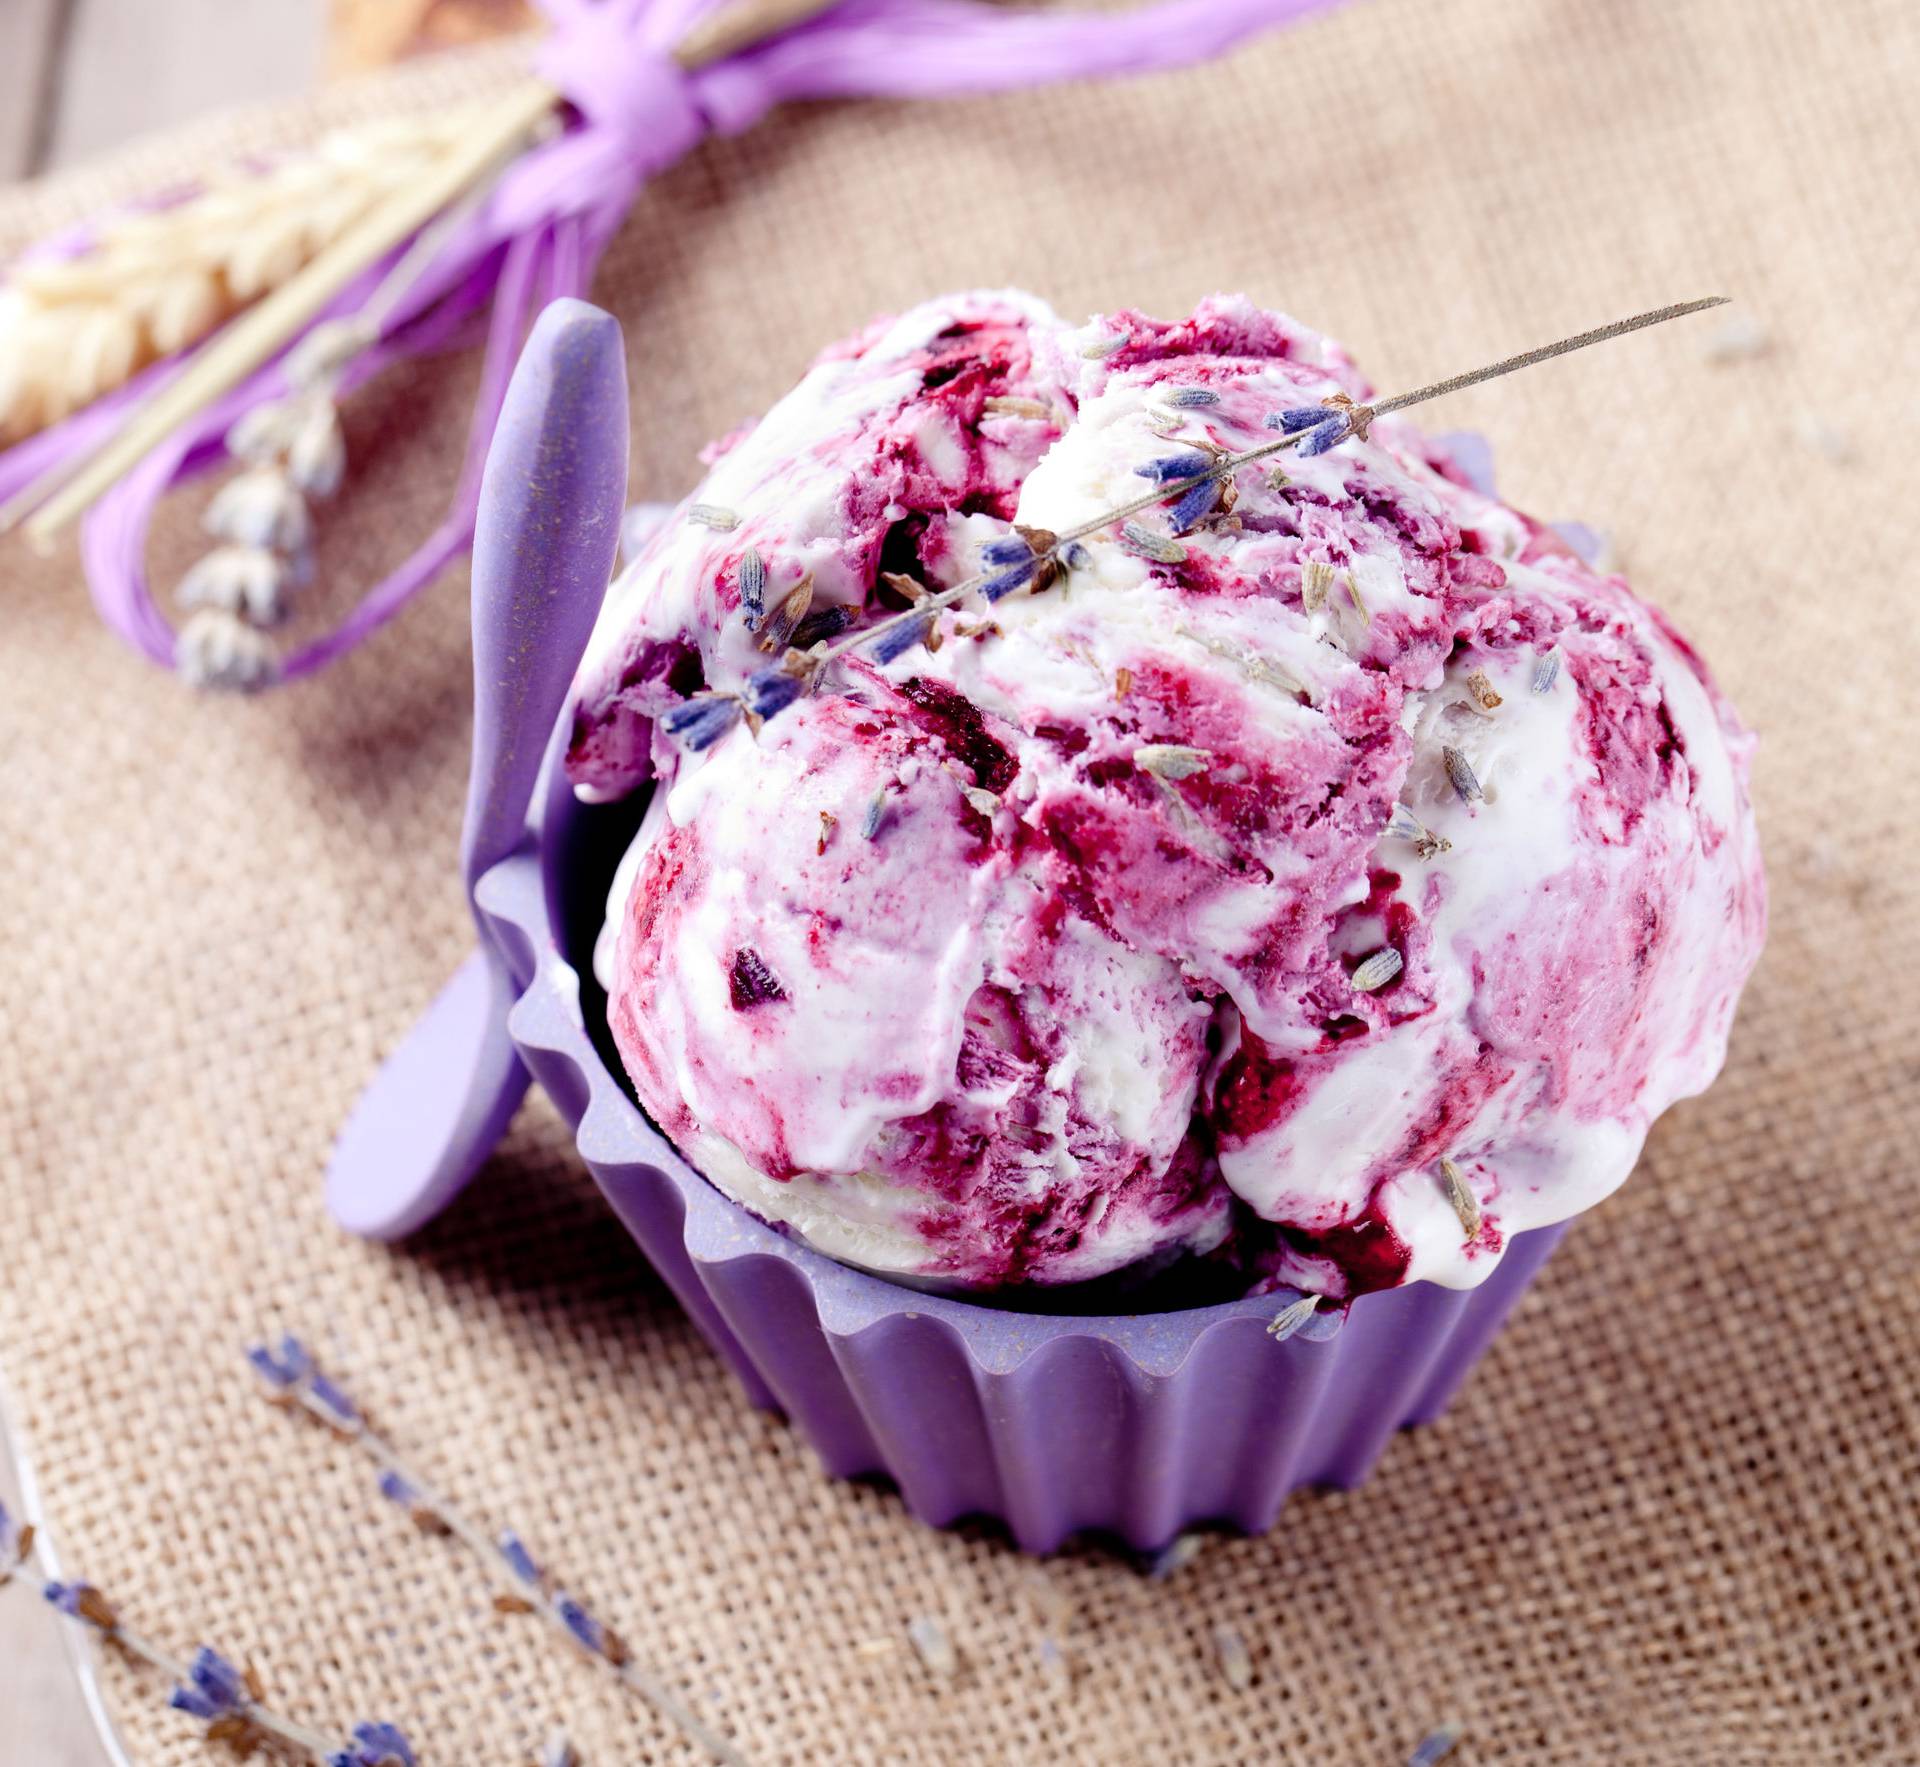 Recepti za domaći sladoled: Od jogurta, banana, meda, bobica